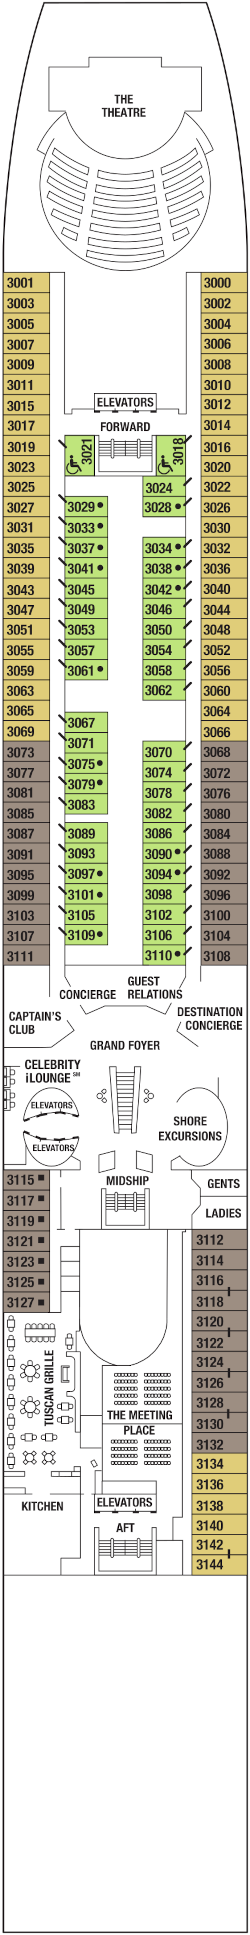 Celebrity Millennium Plaza Deck Deck Plan